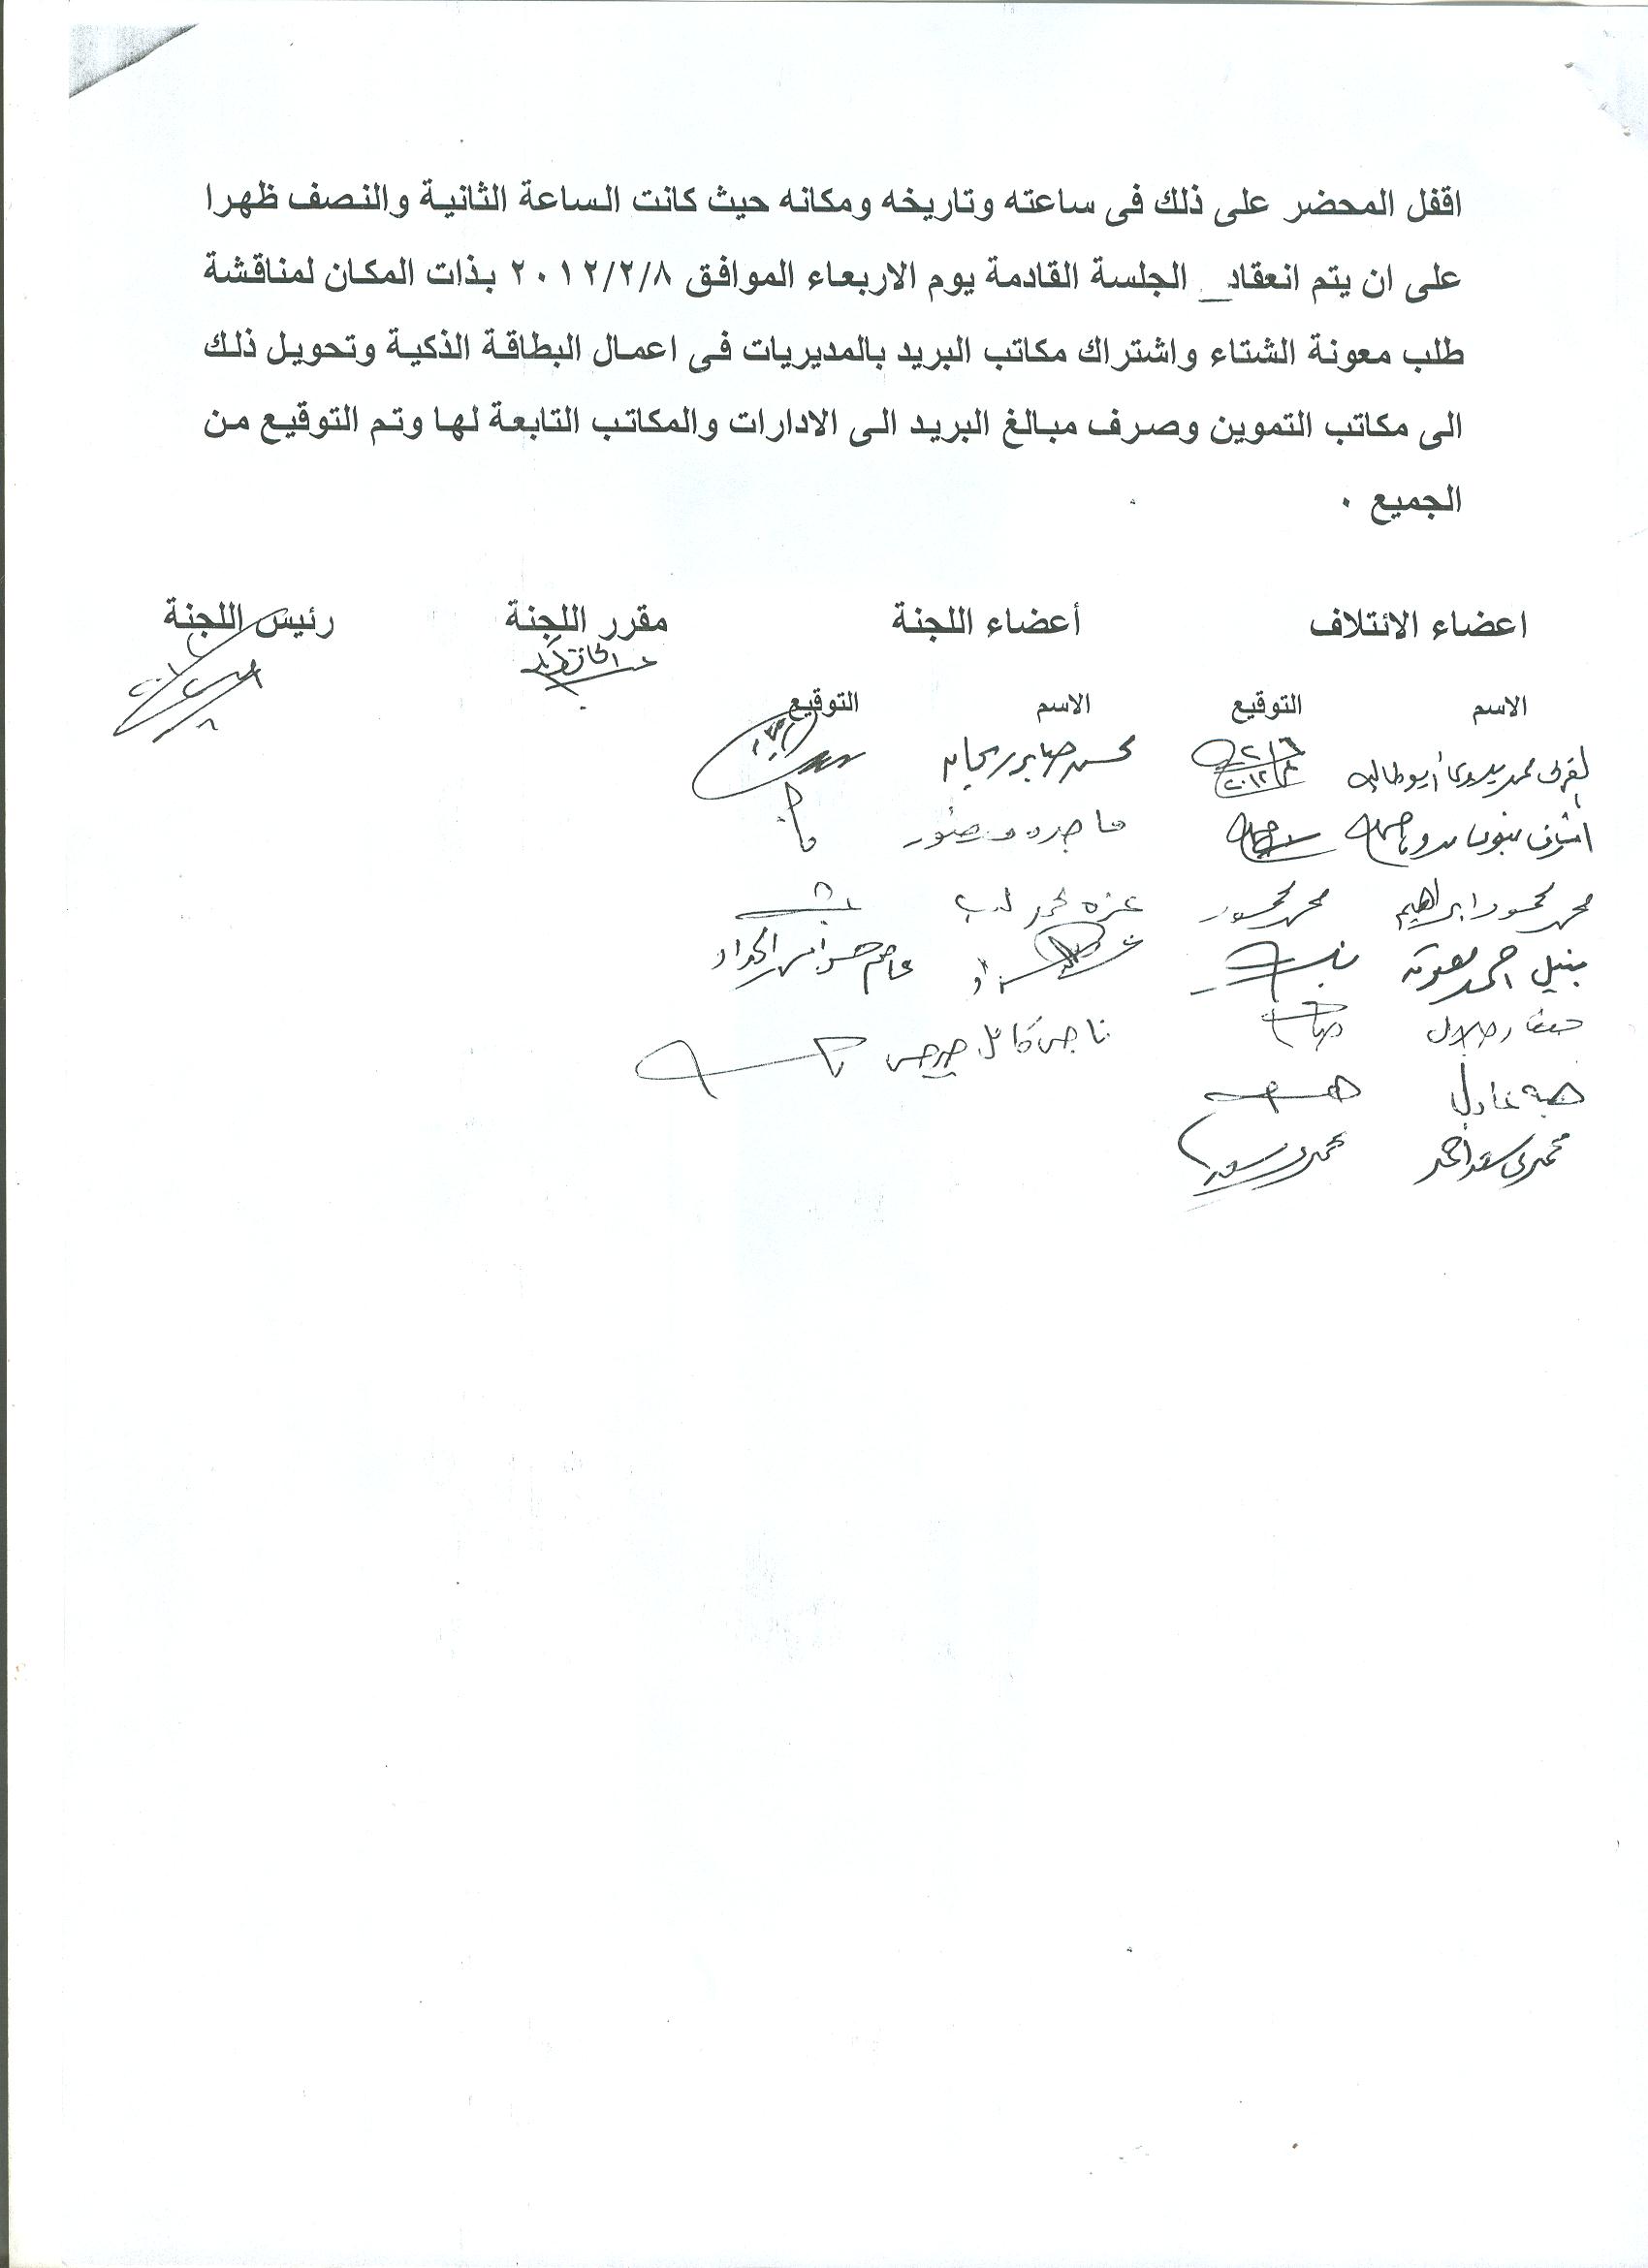 أعمال لجنة الإئتلاف العام للعاملين بتموين مصر بالوزاره خلال شهر فبراير 2012 - صفحة 2 6-310